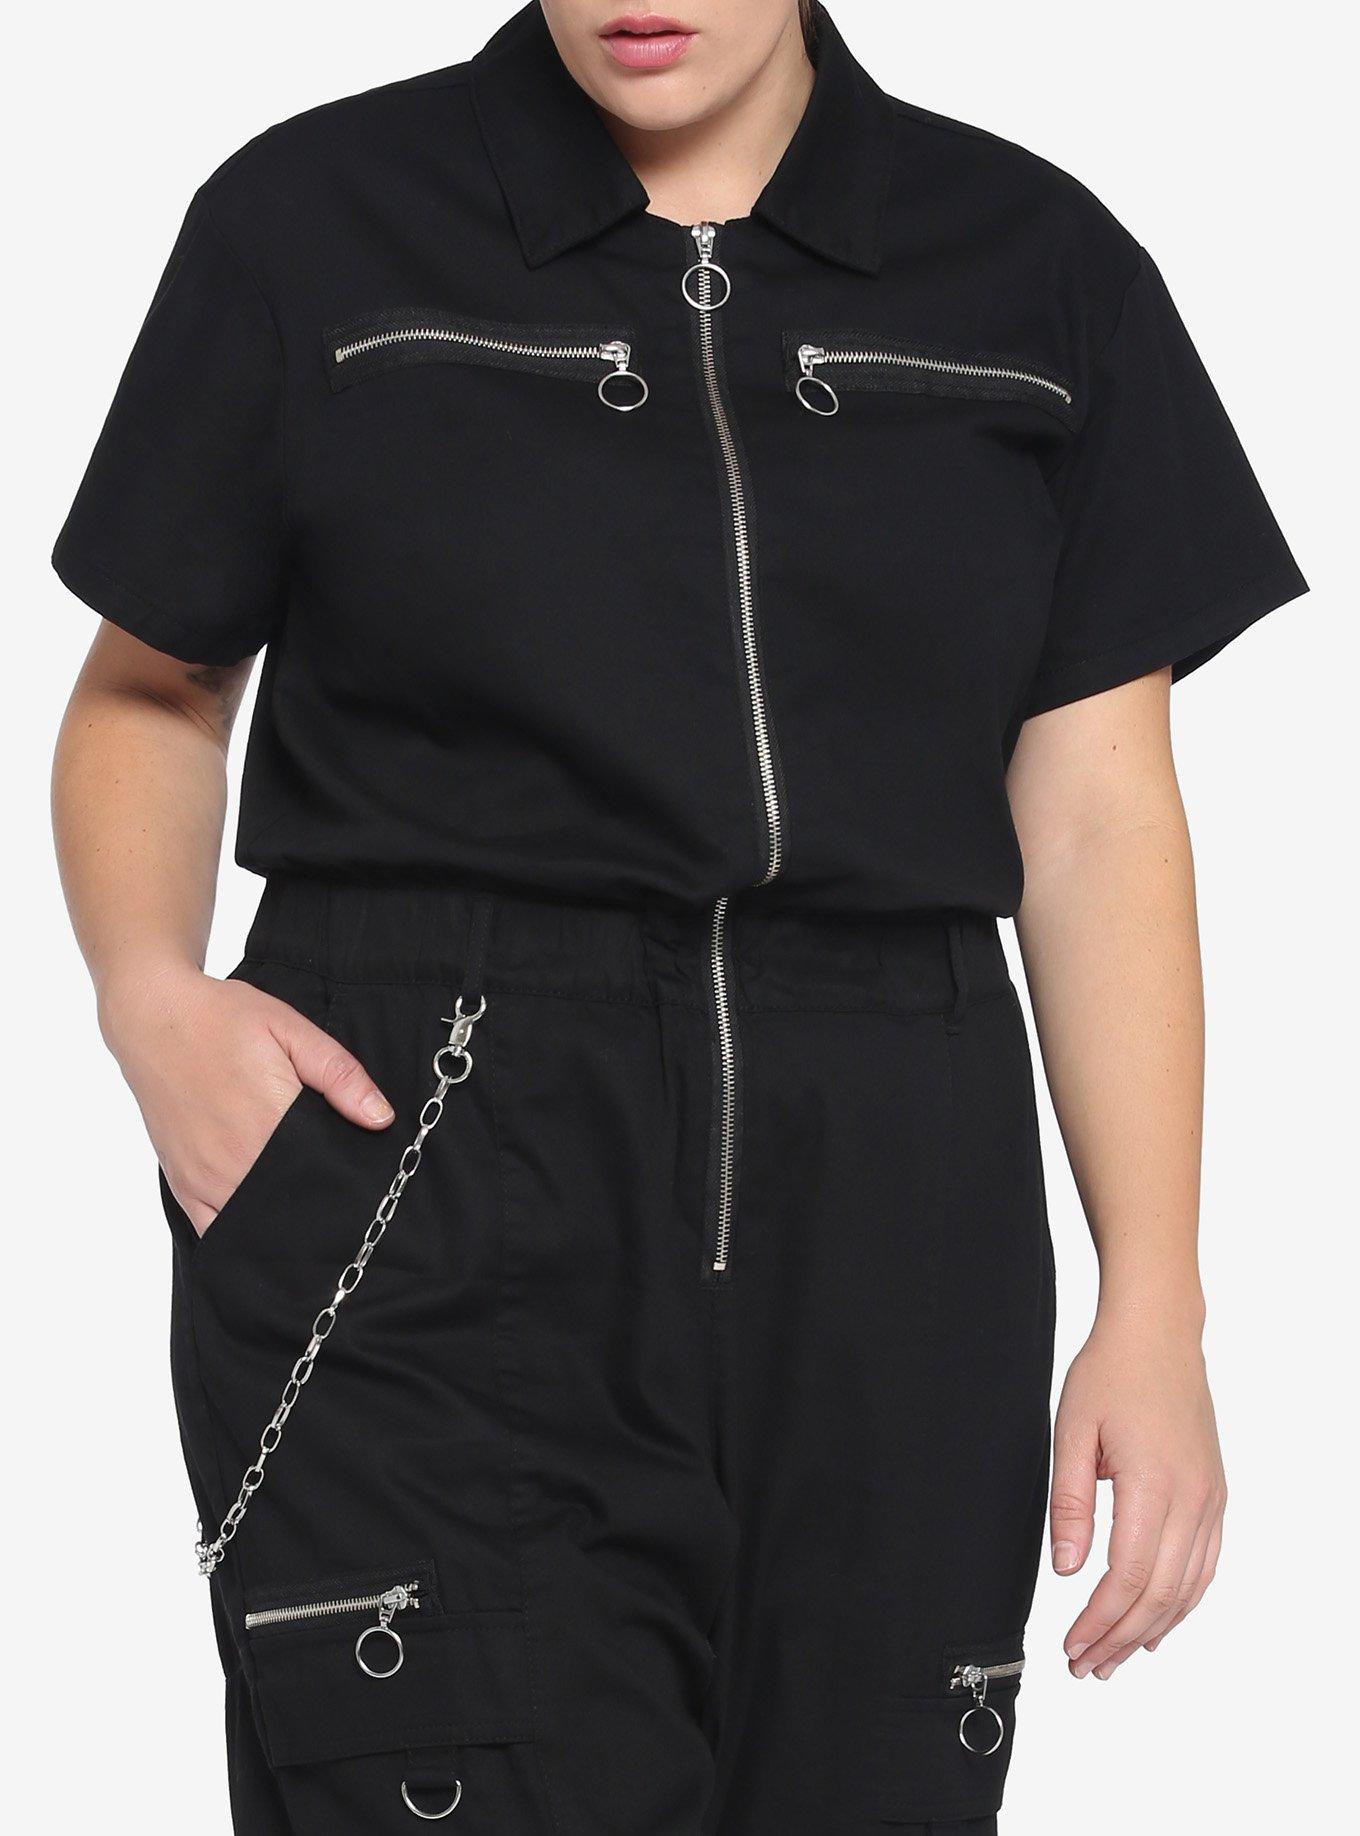 Black Chain Jumpsuit Plus Size, BLACK, alternate